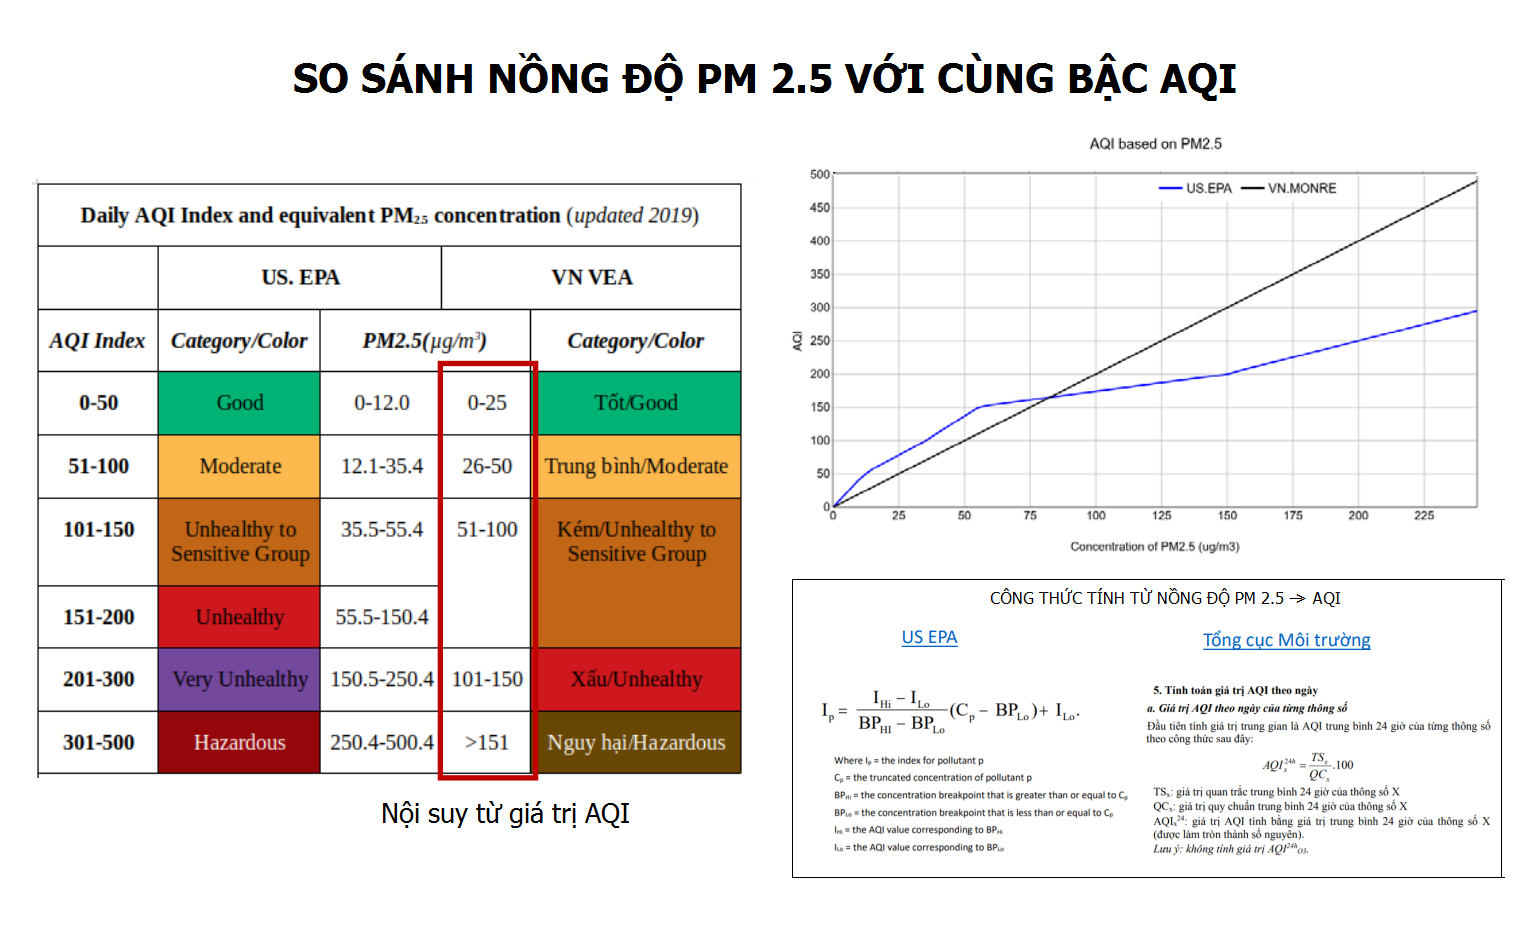 Sự khác nhau trong cách tính AQI về PM2.5 giữa Mỹ và Việt Nam. Cần lưu ý thang màu và khoảng cảnh báo nguy cơ của 2 nước cũng không hoàn toàn tương đồng. Ảnh: Nguyễn Thanh Bình.